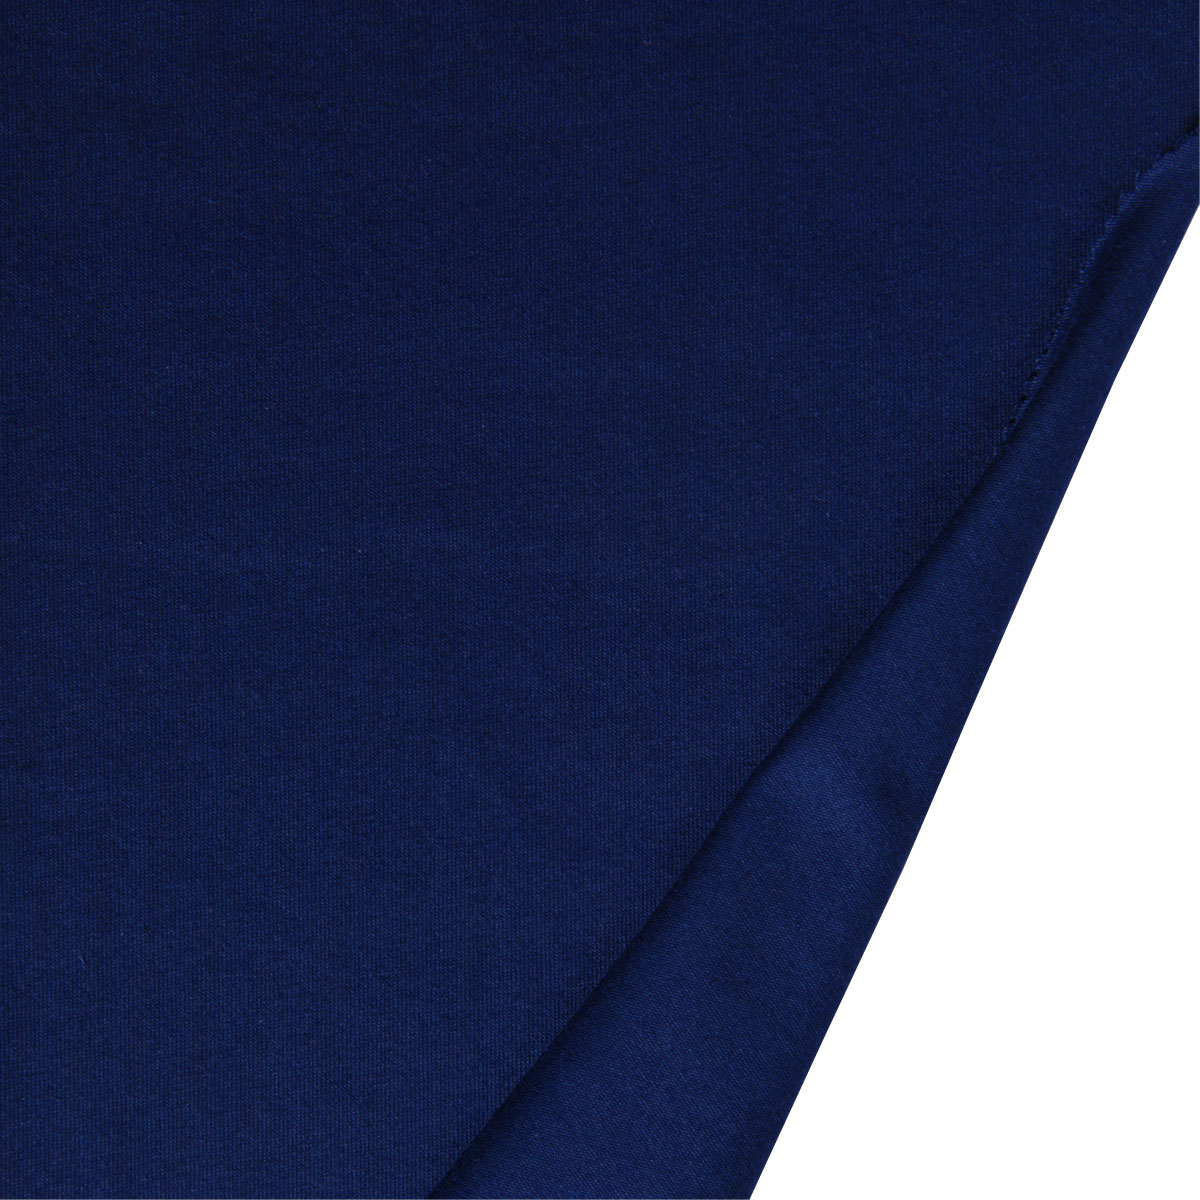 Dekostoff Lilly Uni dunkelblau in 1,6m Breite (METERWARE) Baumwollstoff Stoff aus 95% Baumwolle